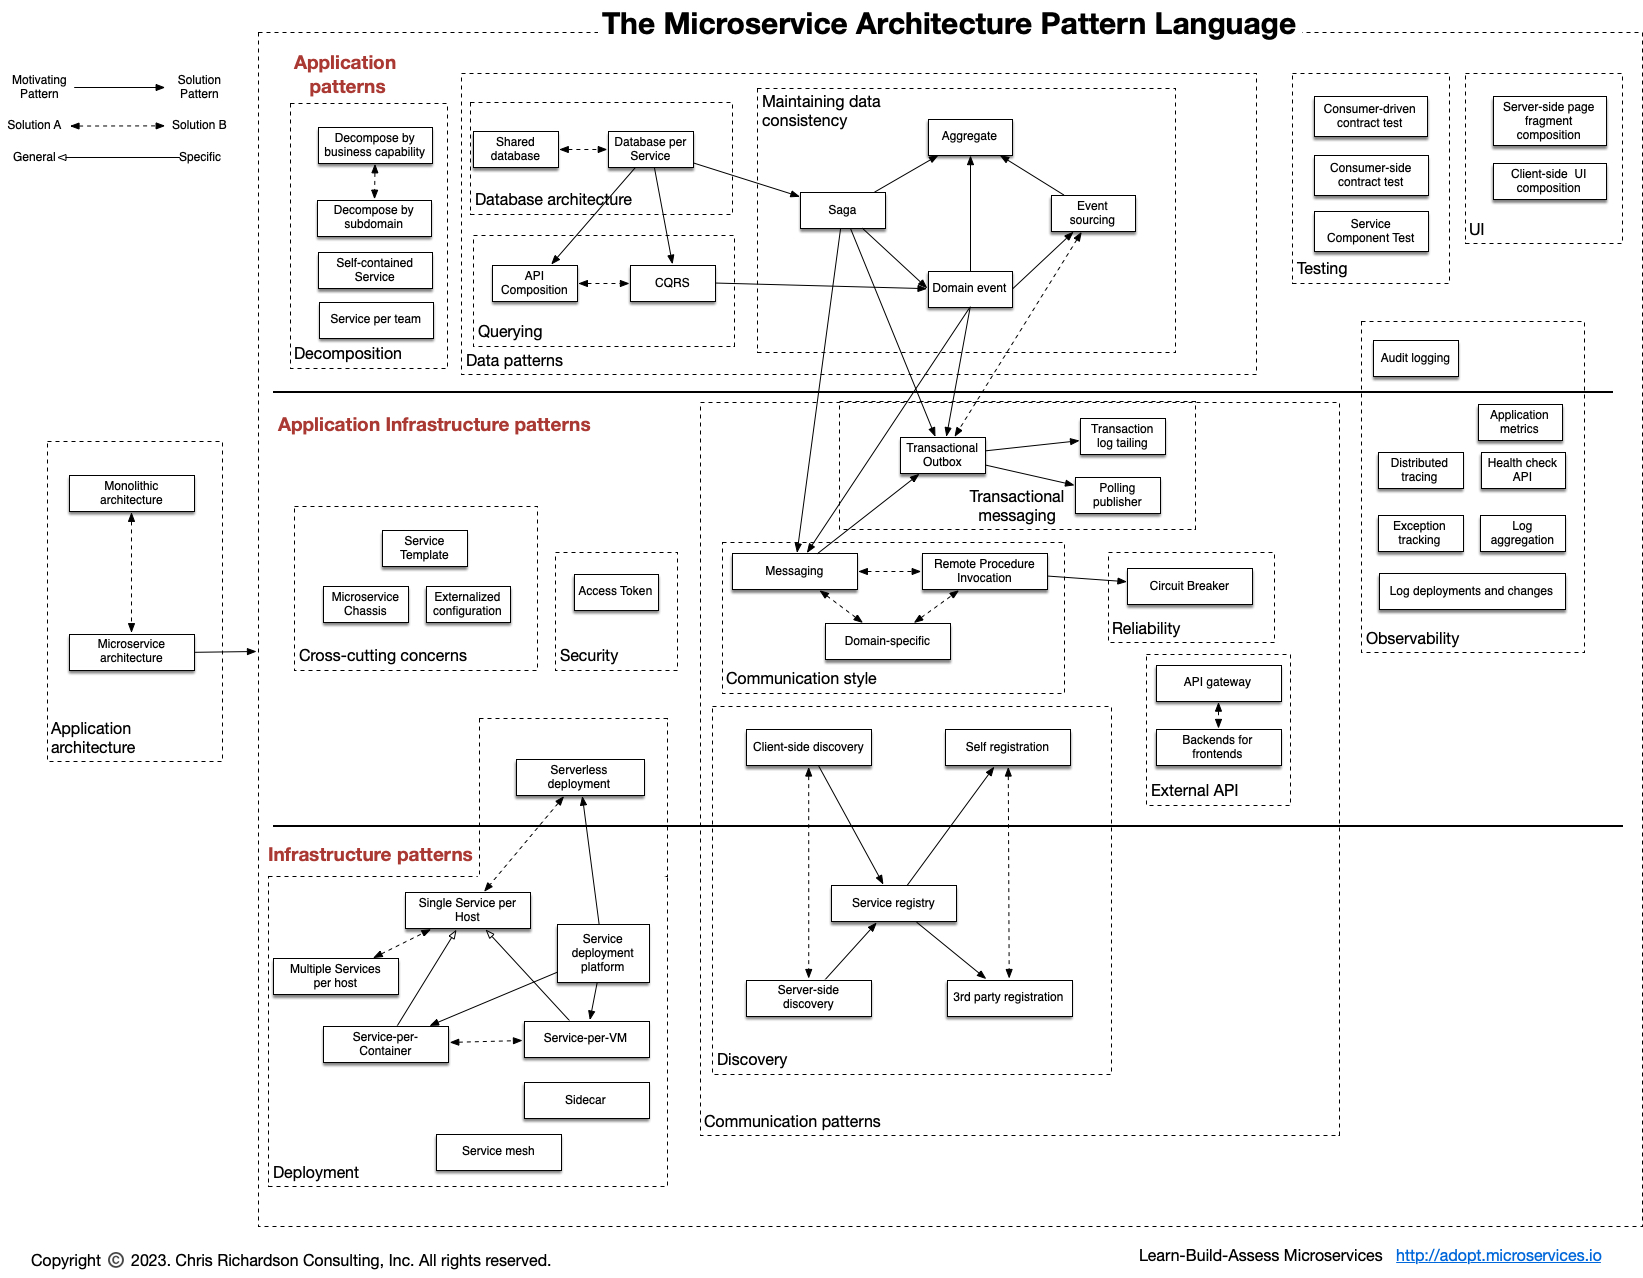 micorservice pattern language